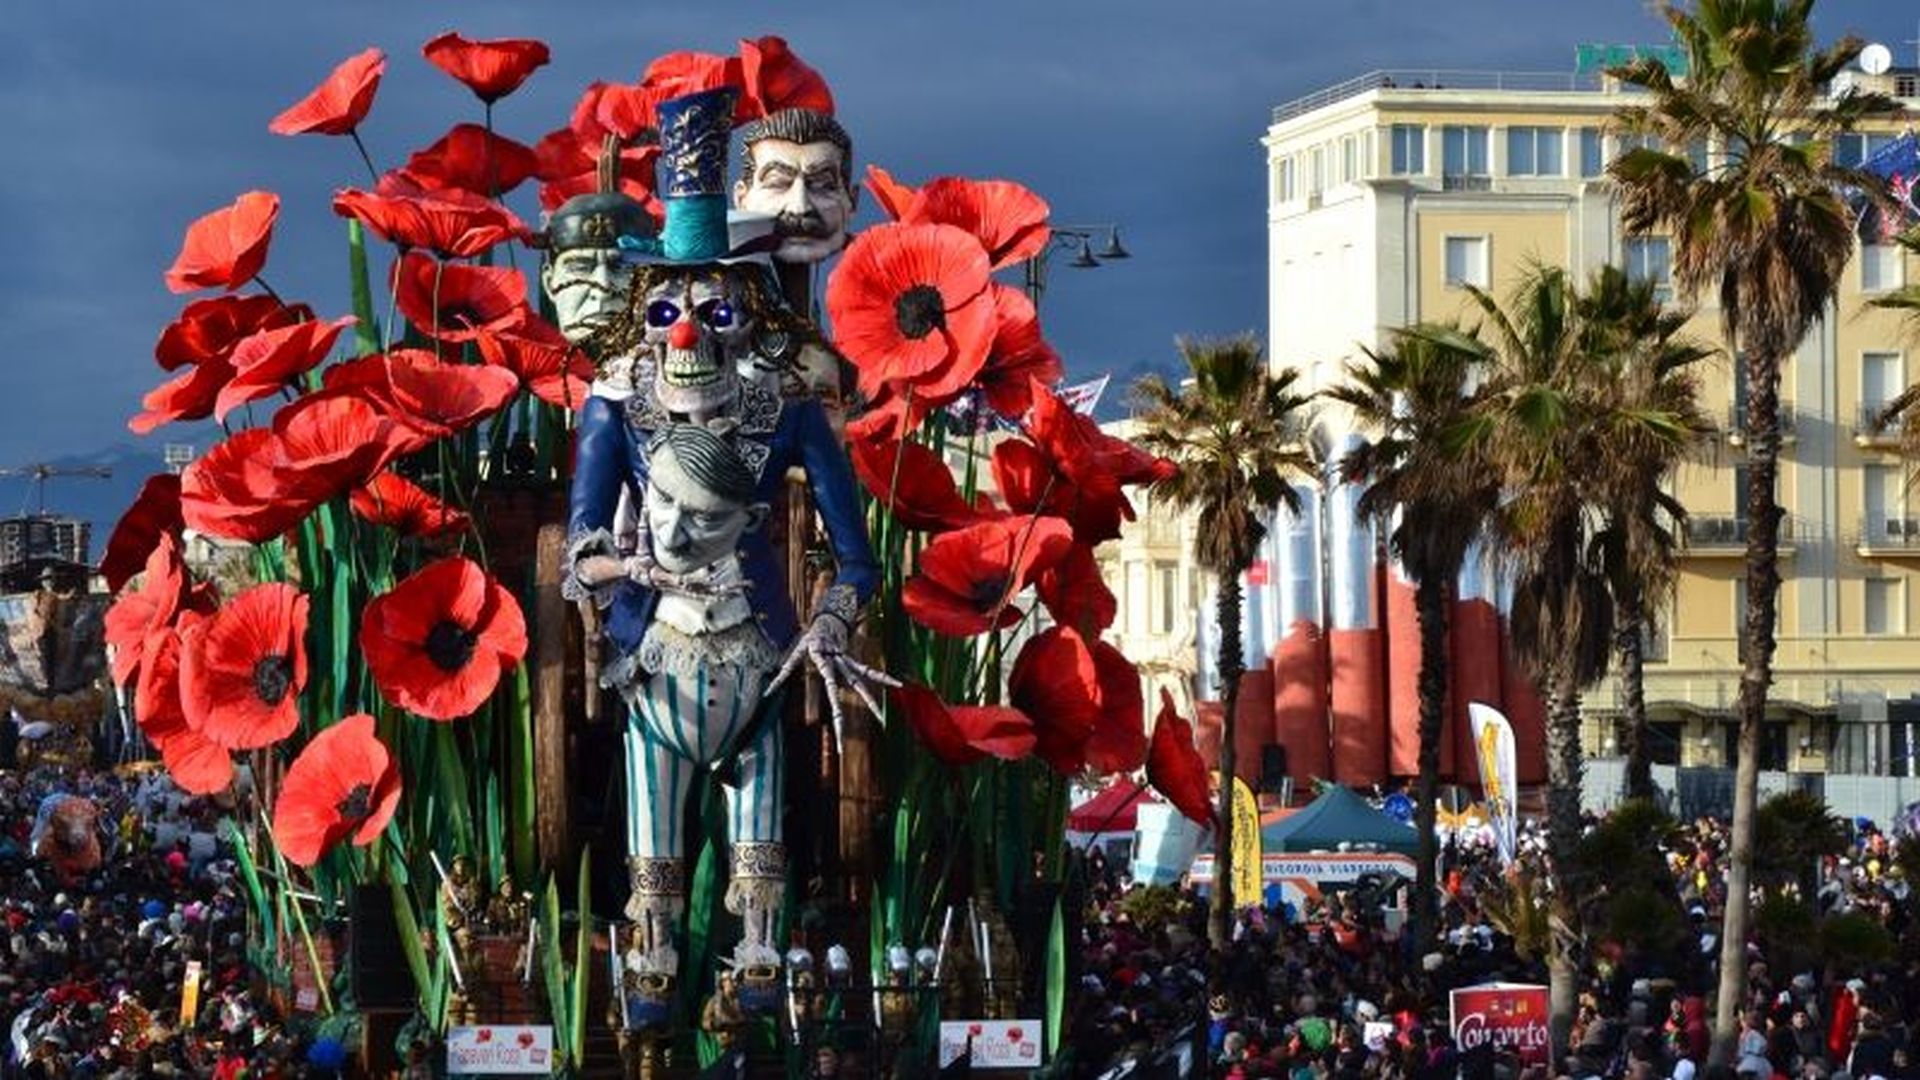 Carnevale di Viareggio, sflata dei carri lungomare